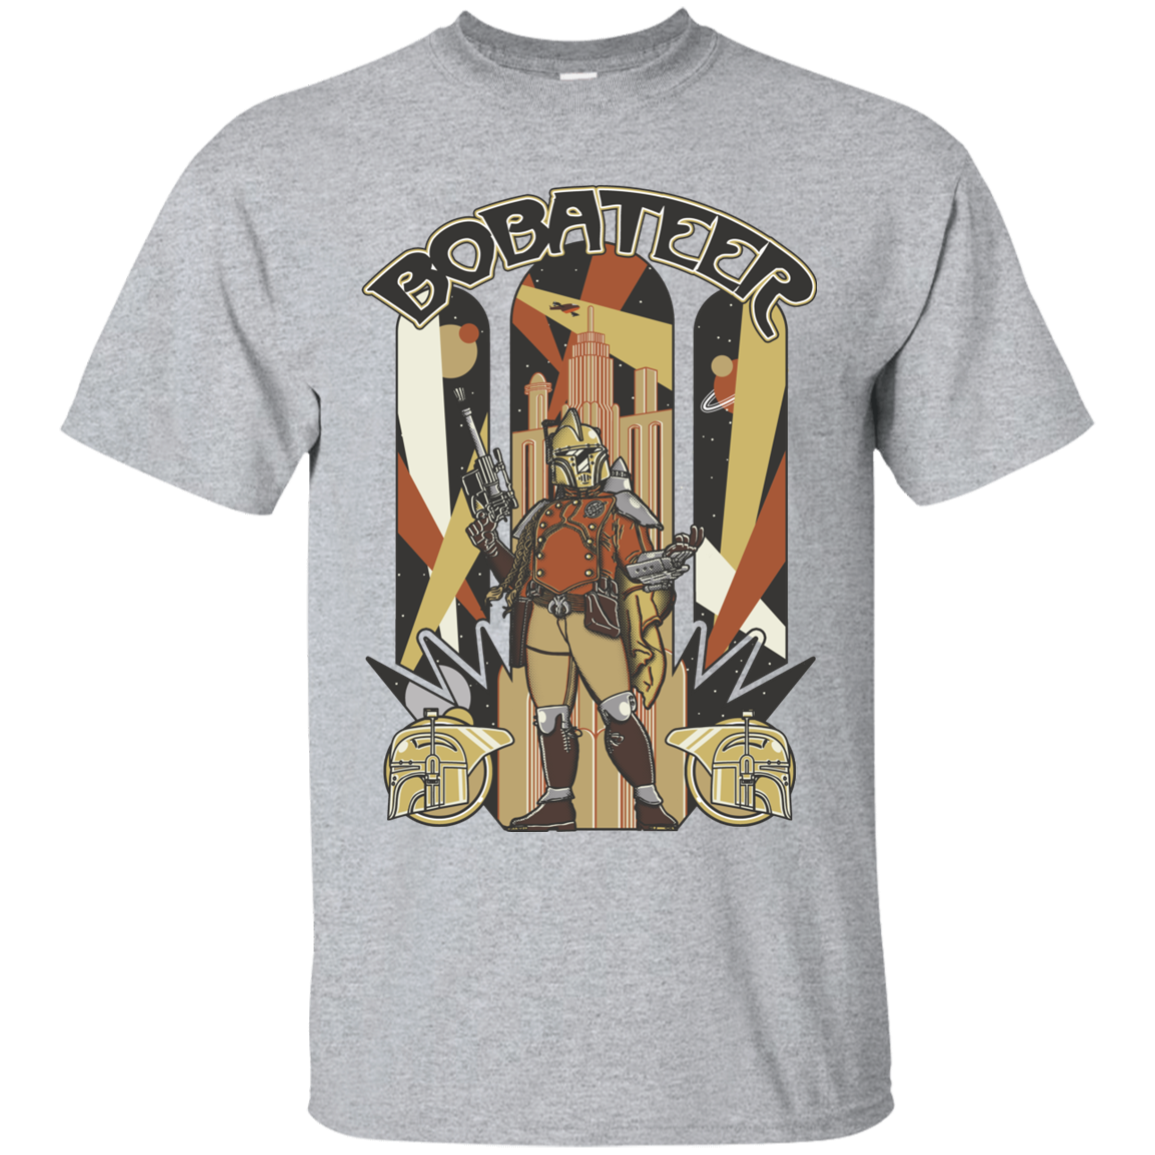 Bobateer T-Shirt